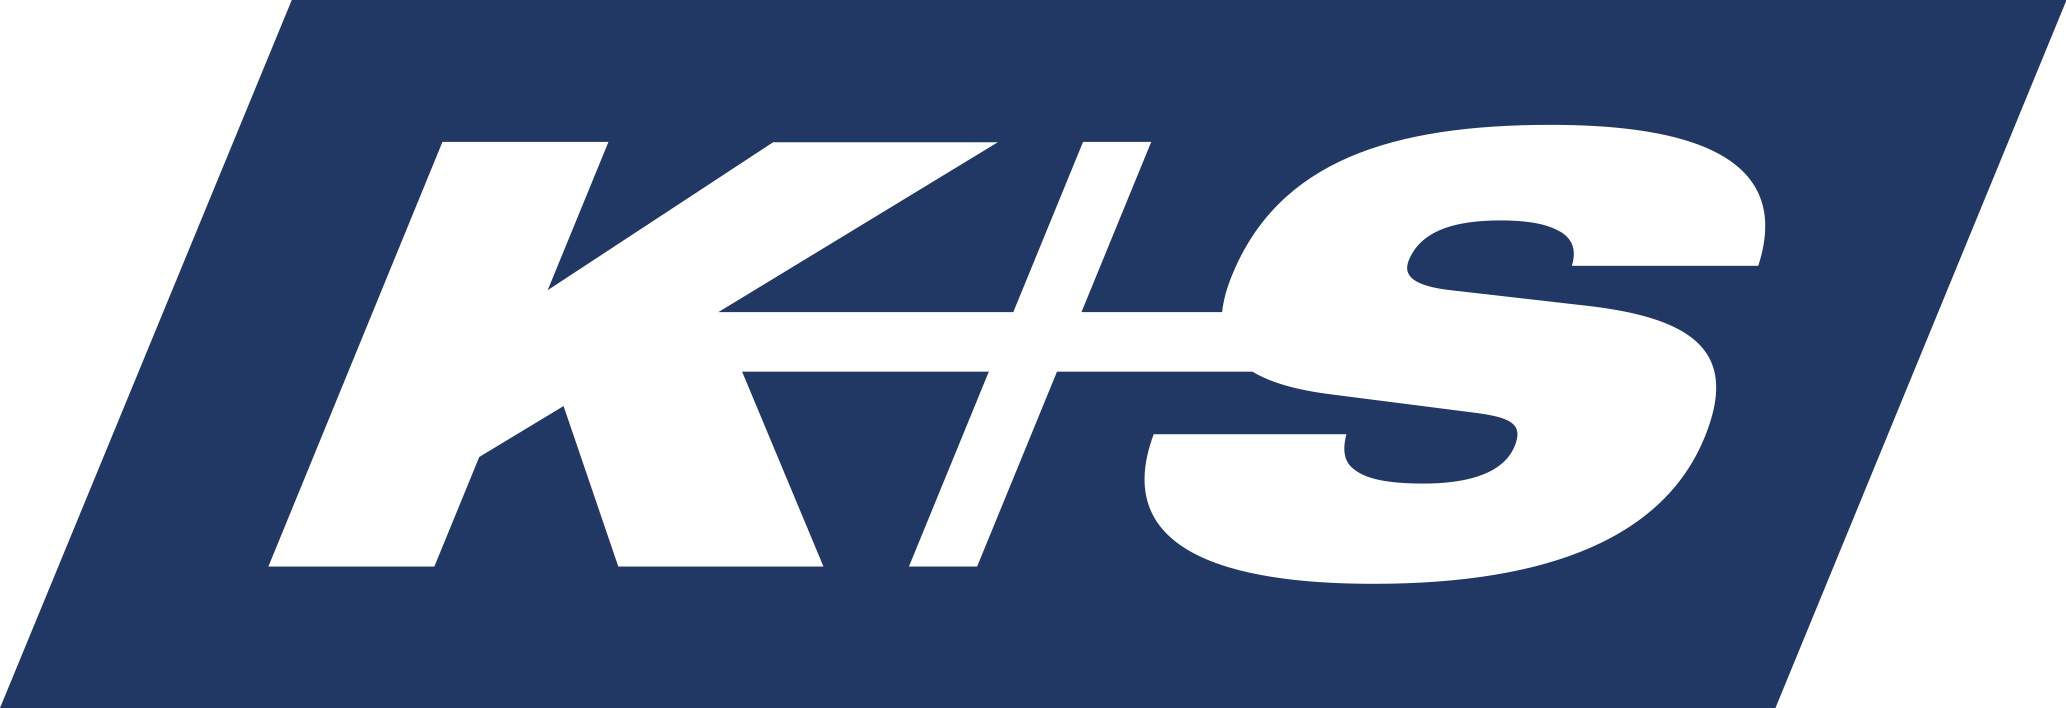 Przy okazji połączenia spółek K+S zaprezentowało swój nowy logotyp oraz zmieniło wygląd strony internetowej